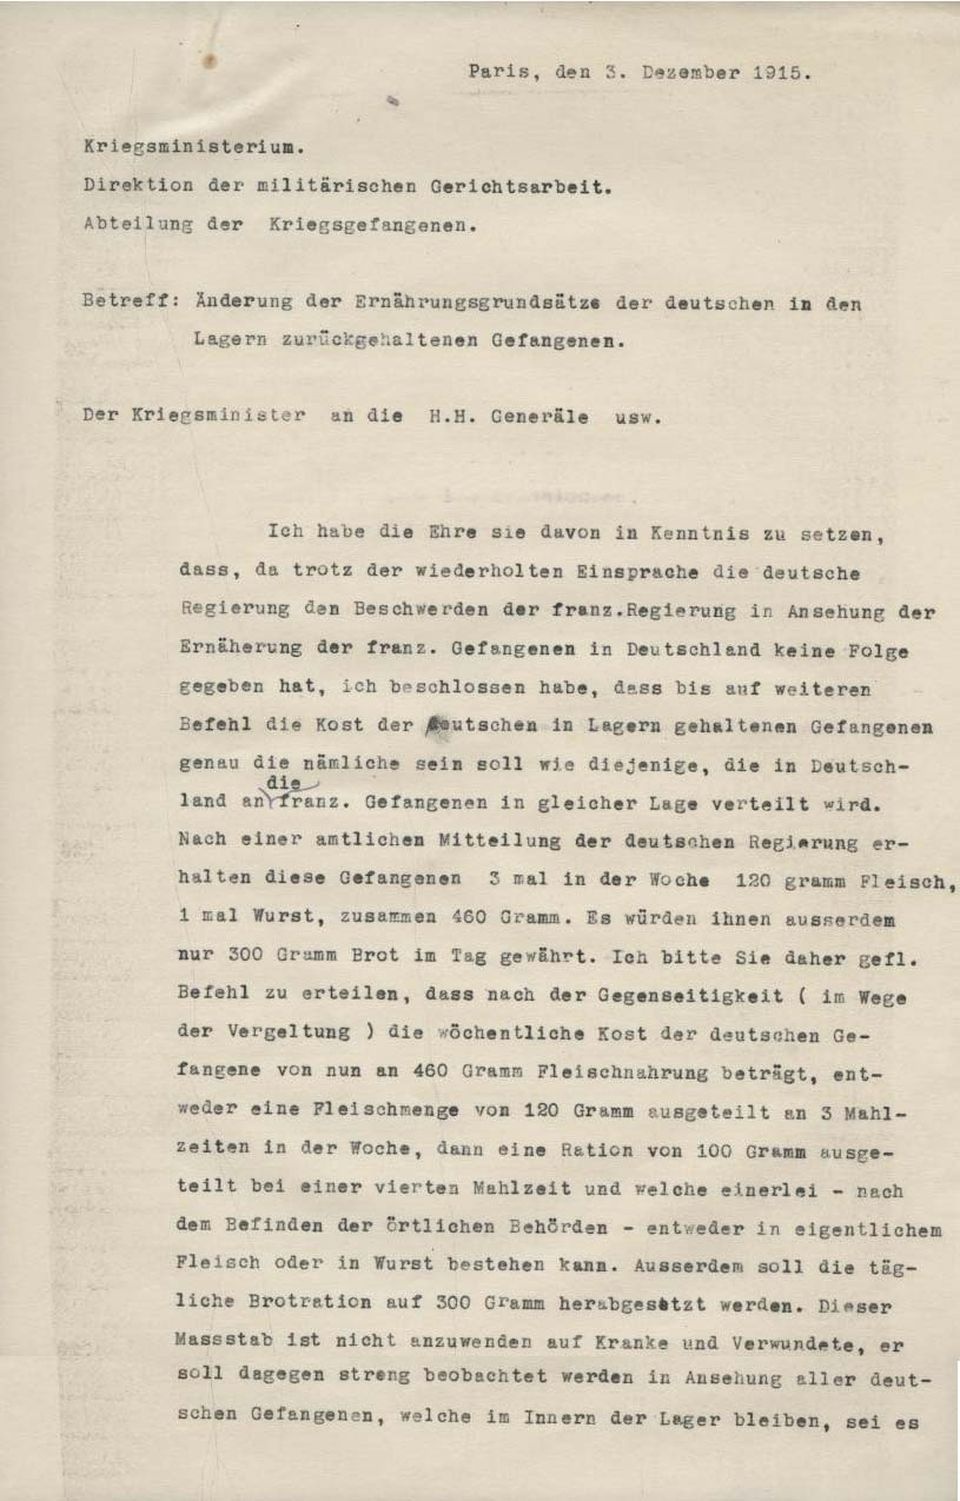 Briefe des französischen Kriegsministeriums an das deutsche Kriegsministerium (Historisches Museum der Pfalz, Speyer CC BY)